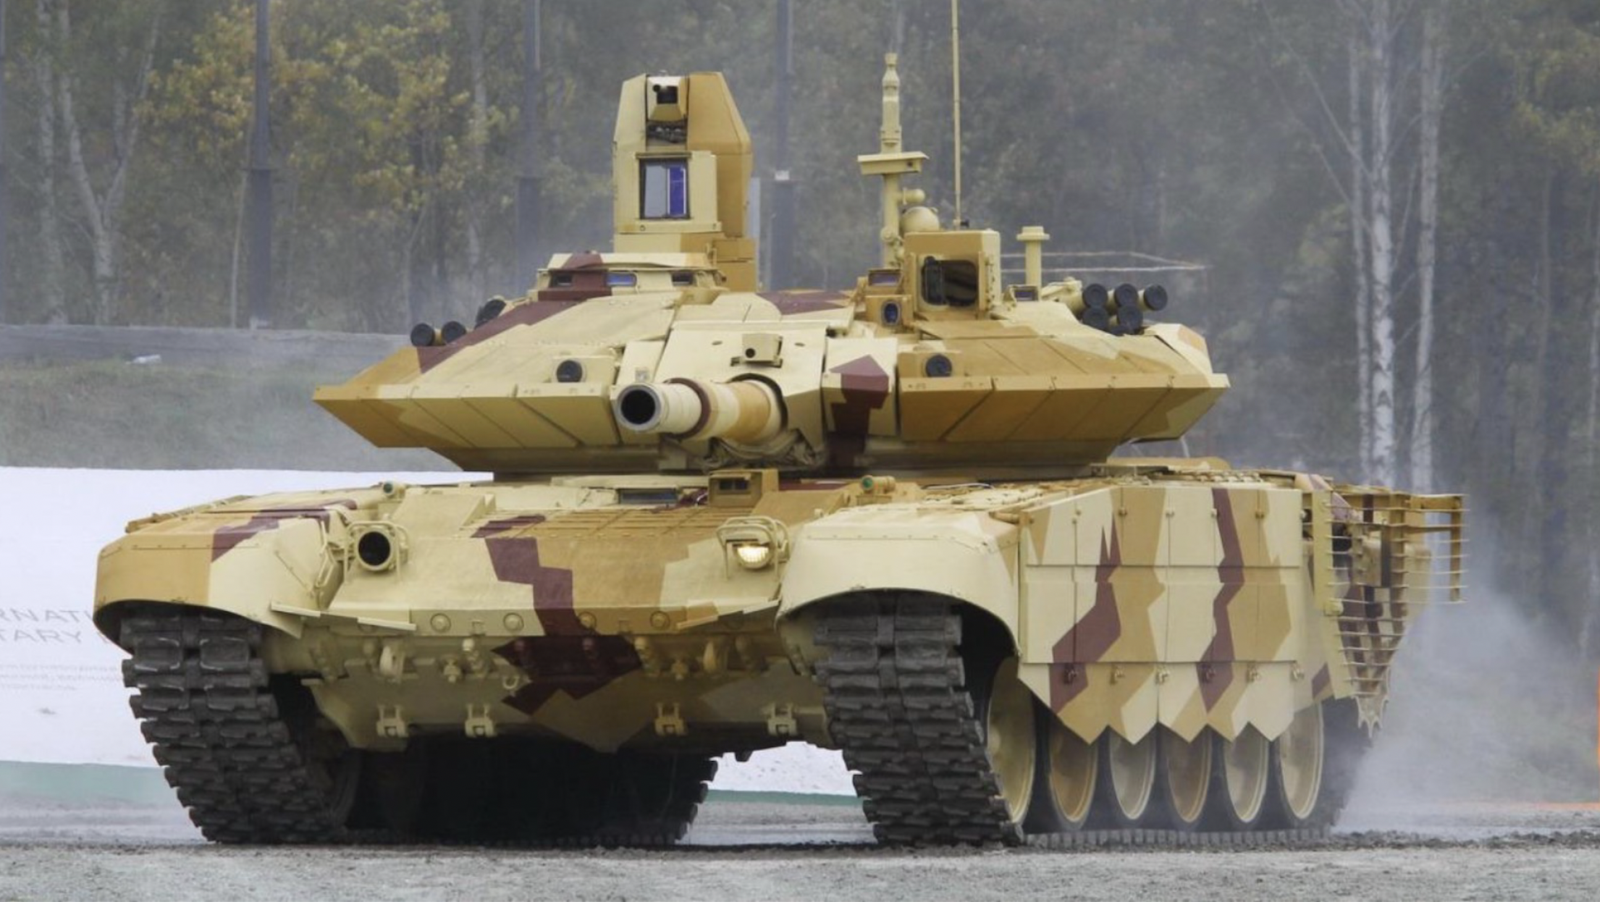 Luôn được xem là biểu tượng của lực lượng Vũ trang Nga, xe tăng T-90 không chỉ sở hữu sức mạnh vượt trội mà còn được thiết kế với nhiều tính năng hiện đại. Hãy cùng chiêm ngưỡng những hình ảnh nổi bật của xe tăng T-90 để đắm chìm trong thế giới quân sự đầy hấp dẫn.